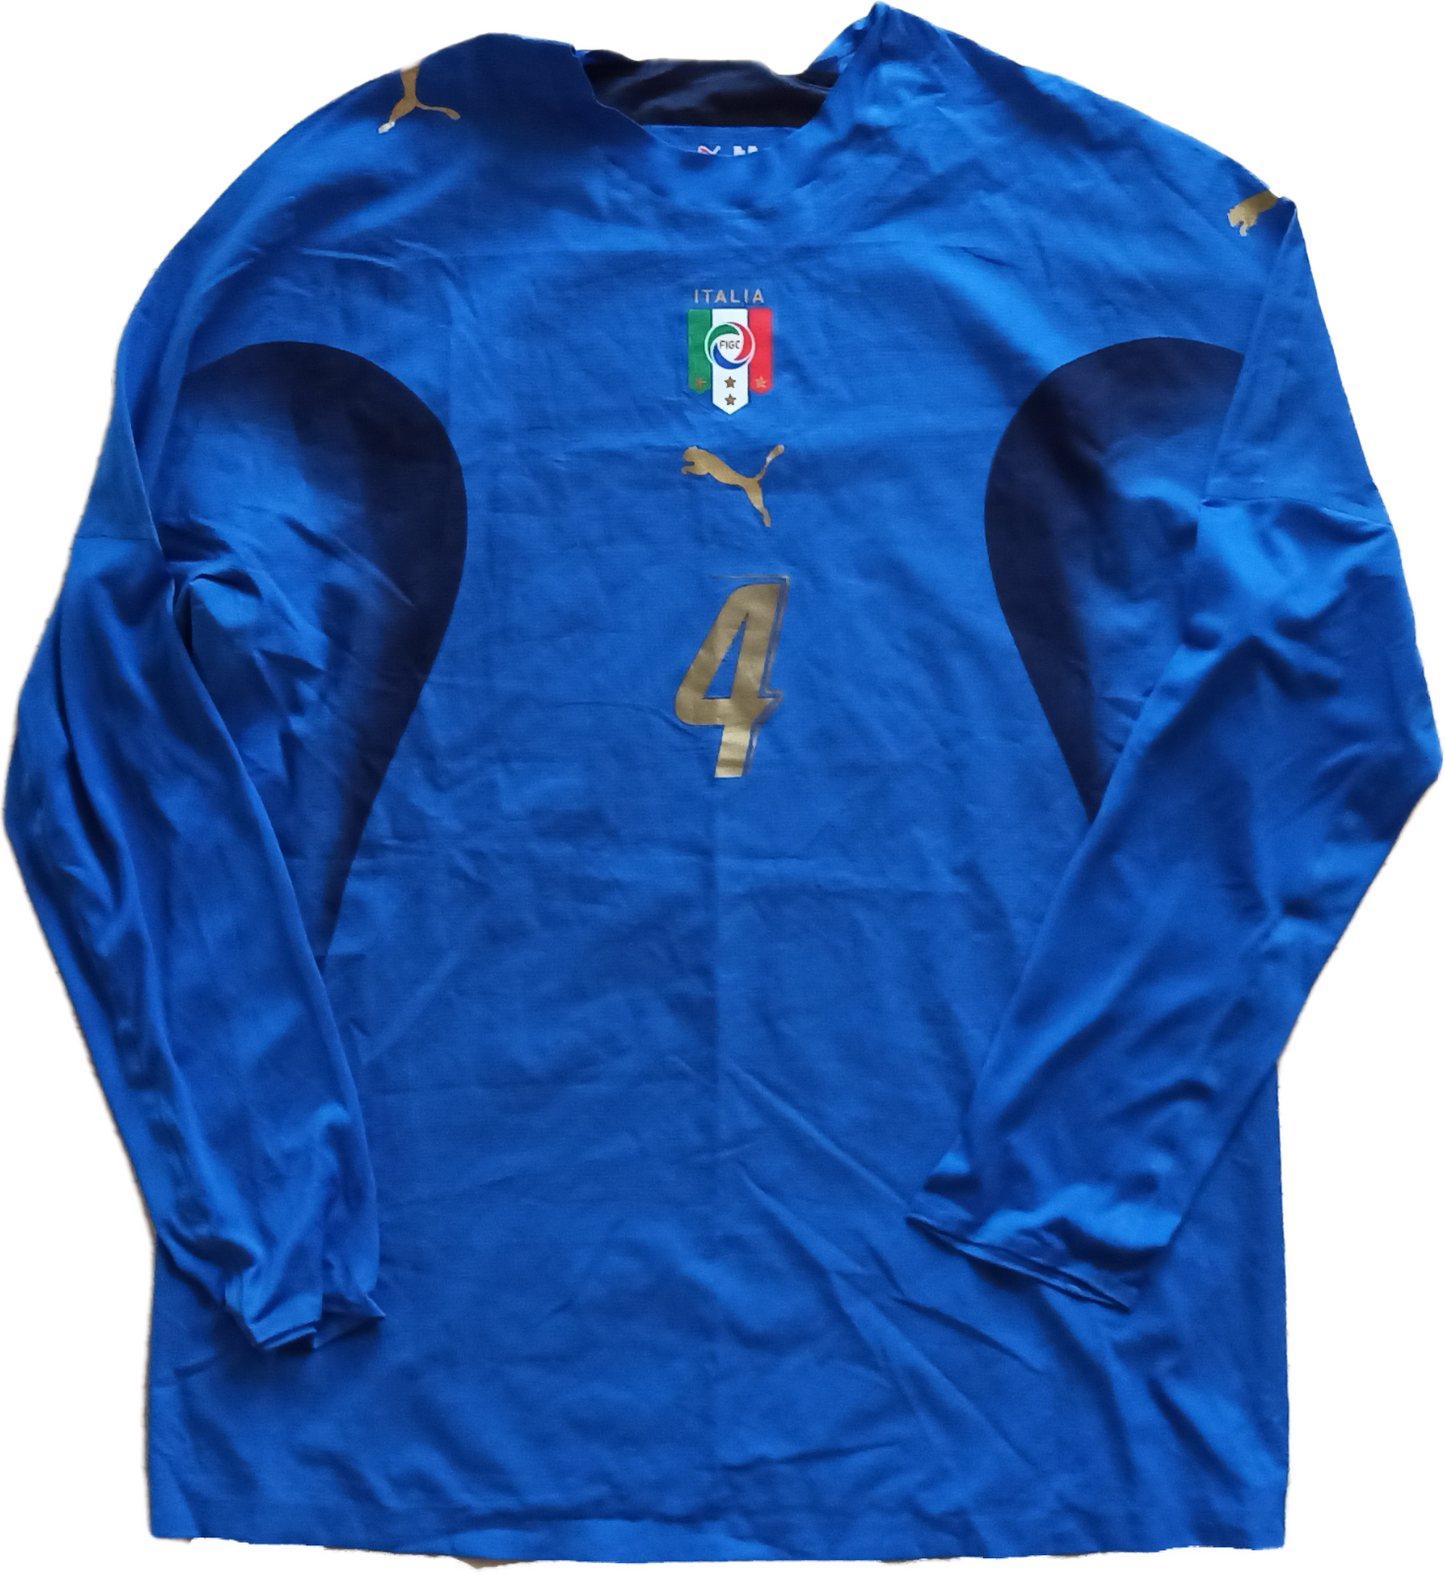 maglia match worn Italia 2007 DE ROSSI Puma World Cup Mondiali home friendly